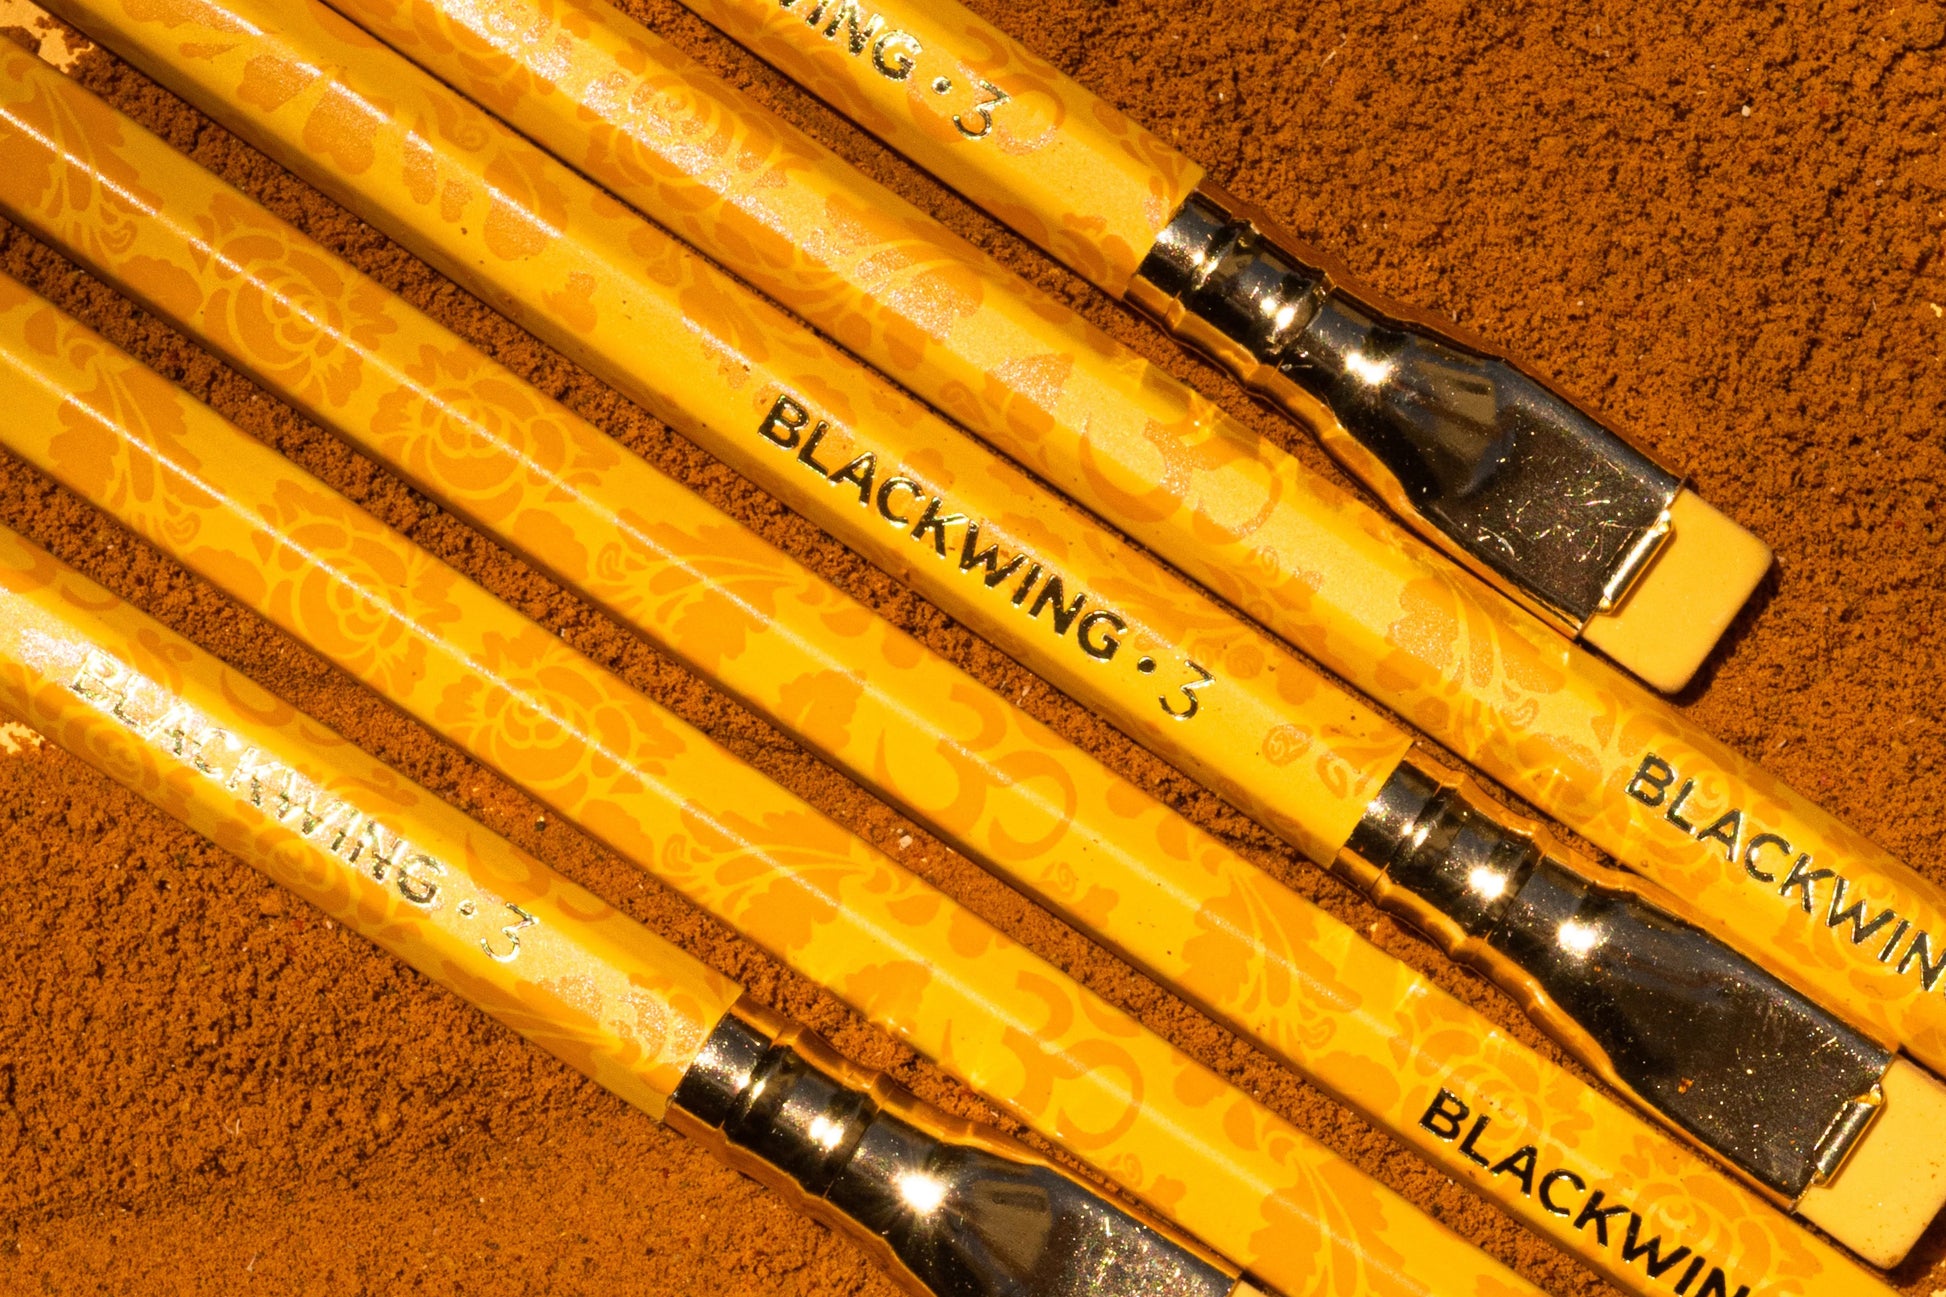 Blackwing Pencils - Volume 3 | Flywheel | Stationery | Tasmania